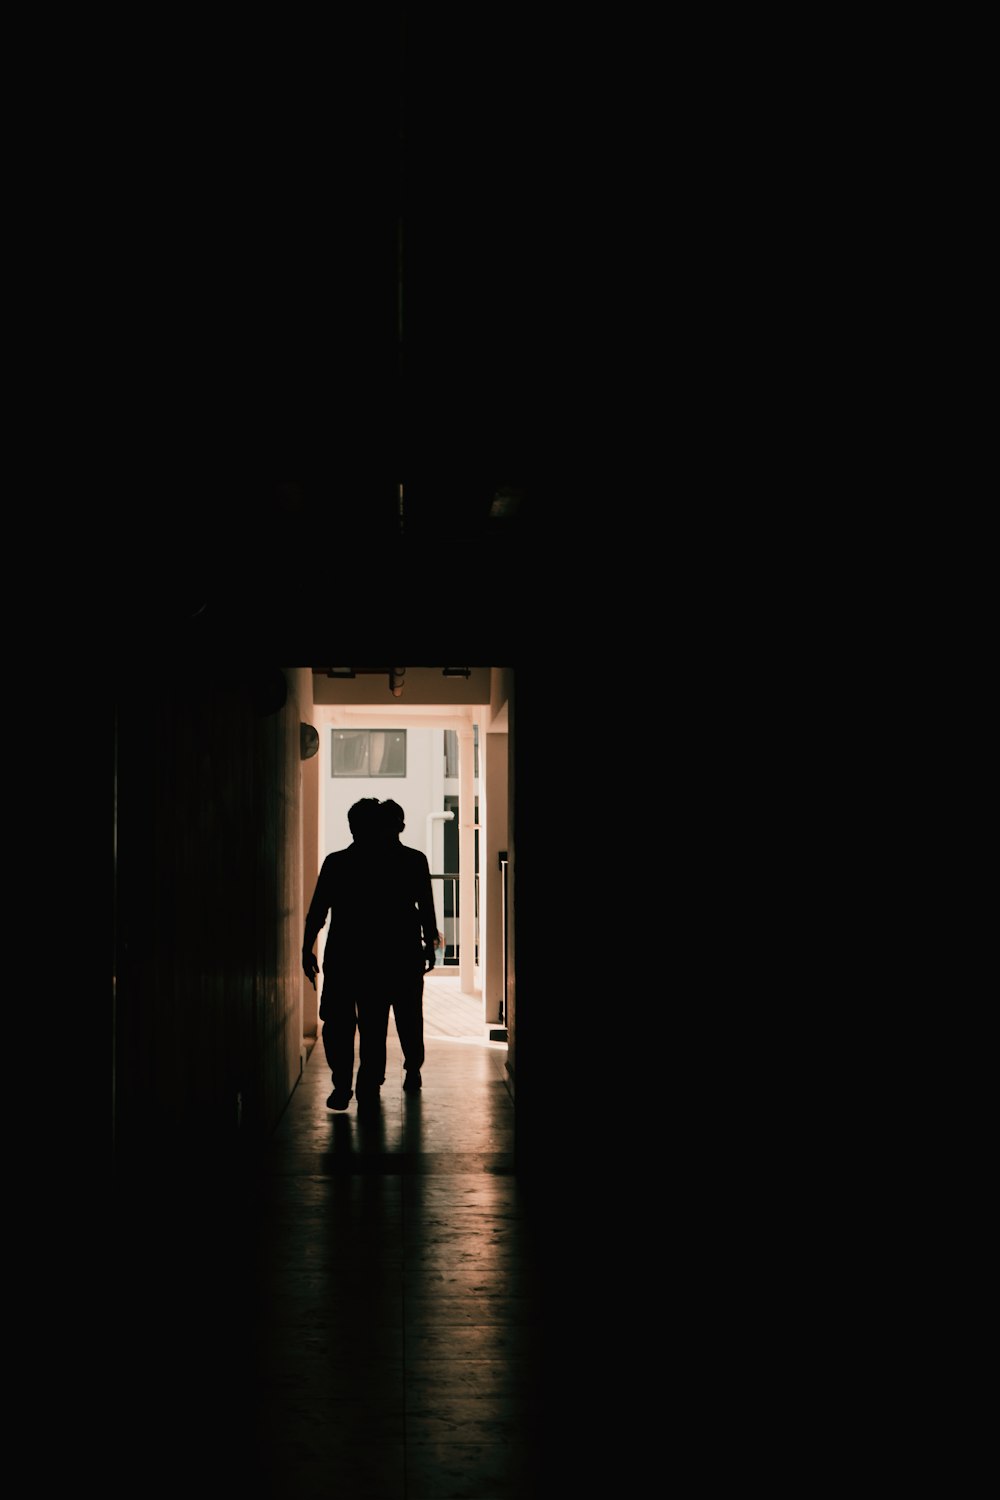 a person walking through a dark hallway